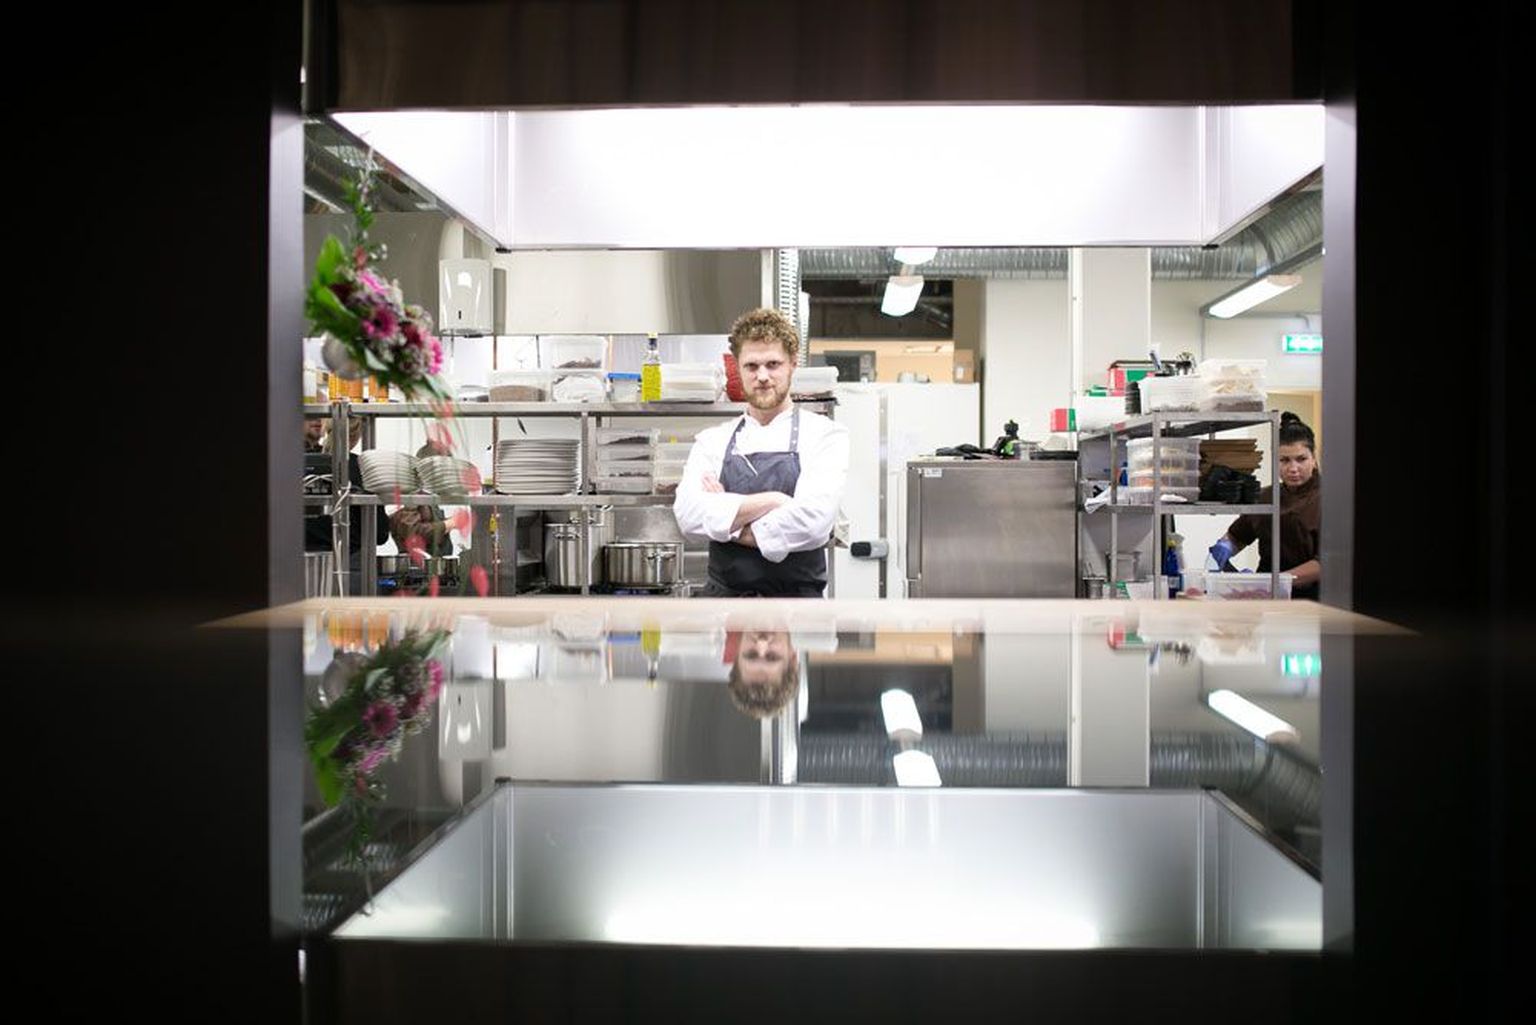 Läikivad valdused: Herkki Ruubel on ammutanud Pärnu Hedon spaa restorani Raimond nelja sektsiooniga köögi kujundamiseks ideid välismaal nähtust-kogetust.